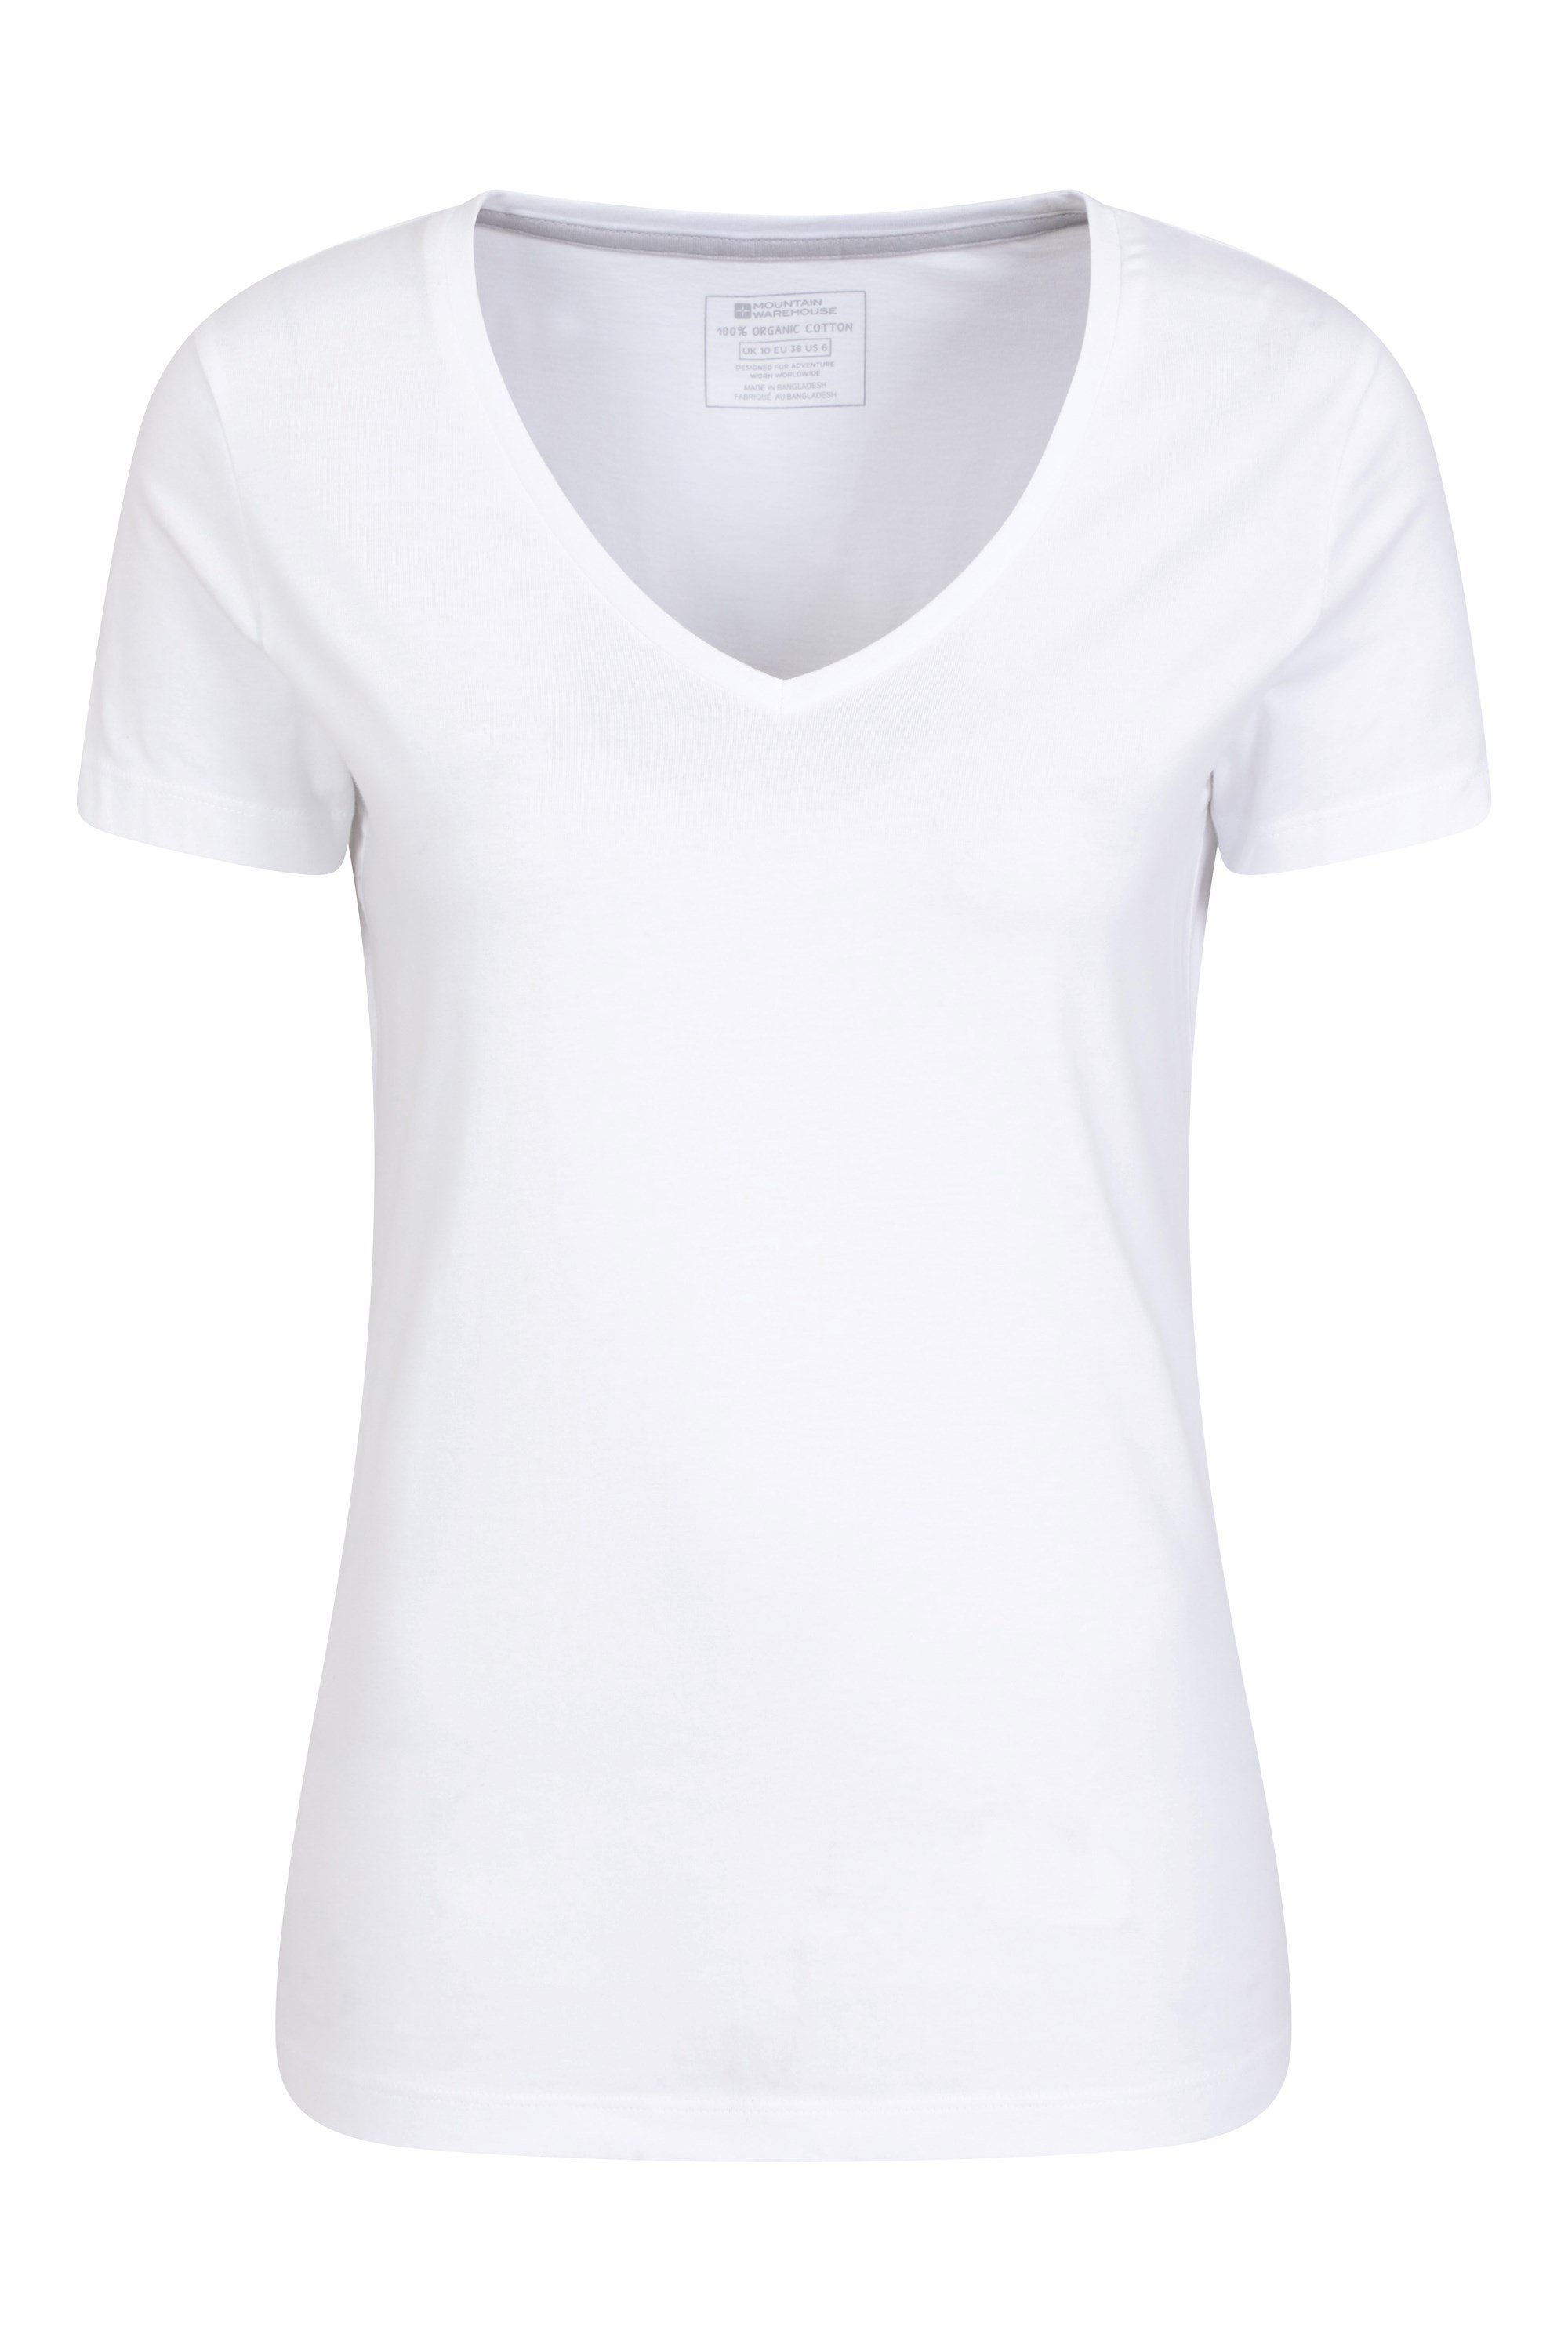 Eden Womens Organic V-neck T-shirt - White